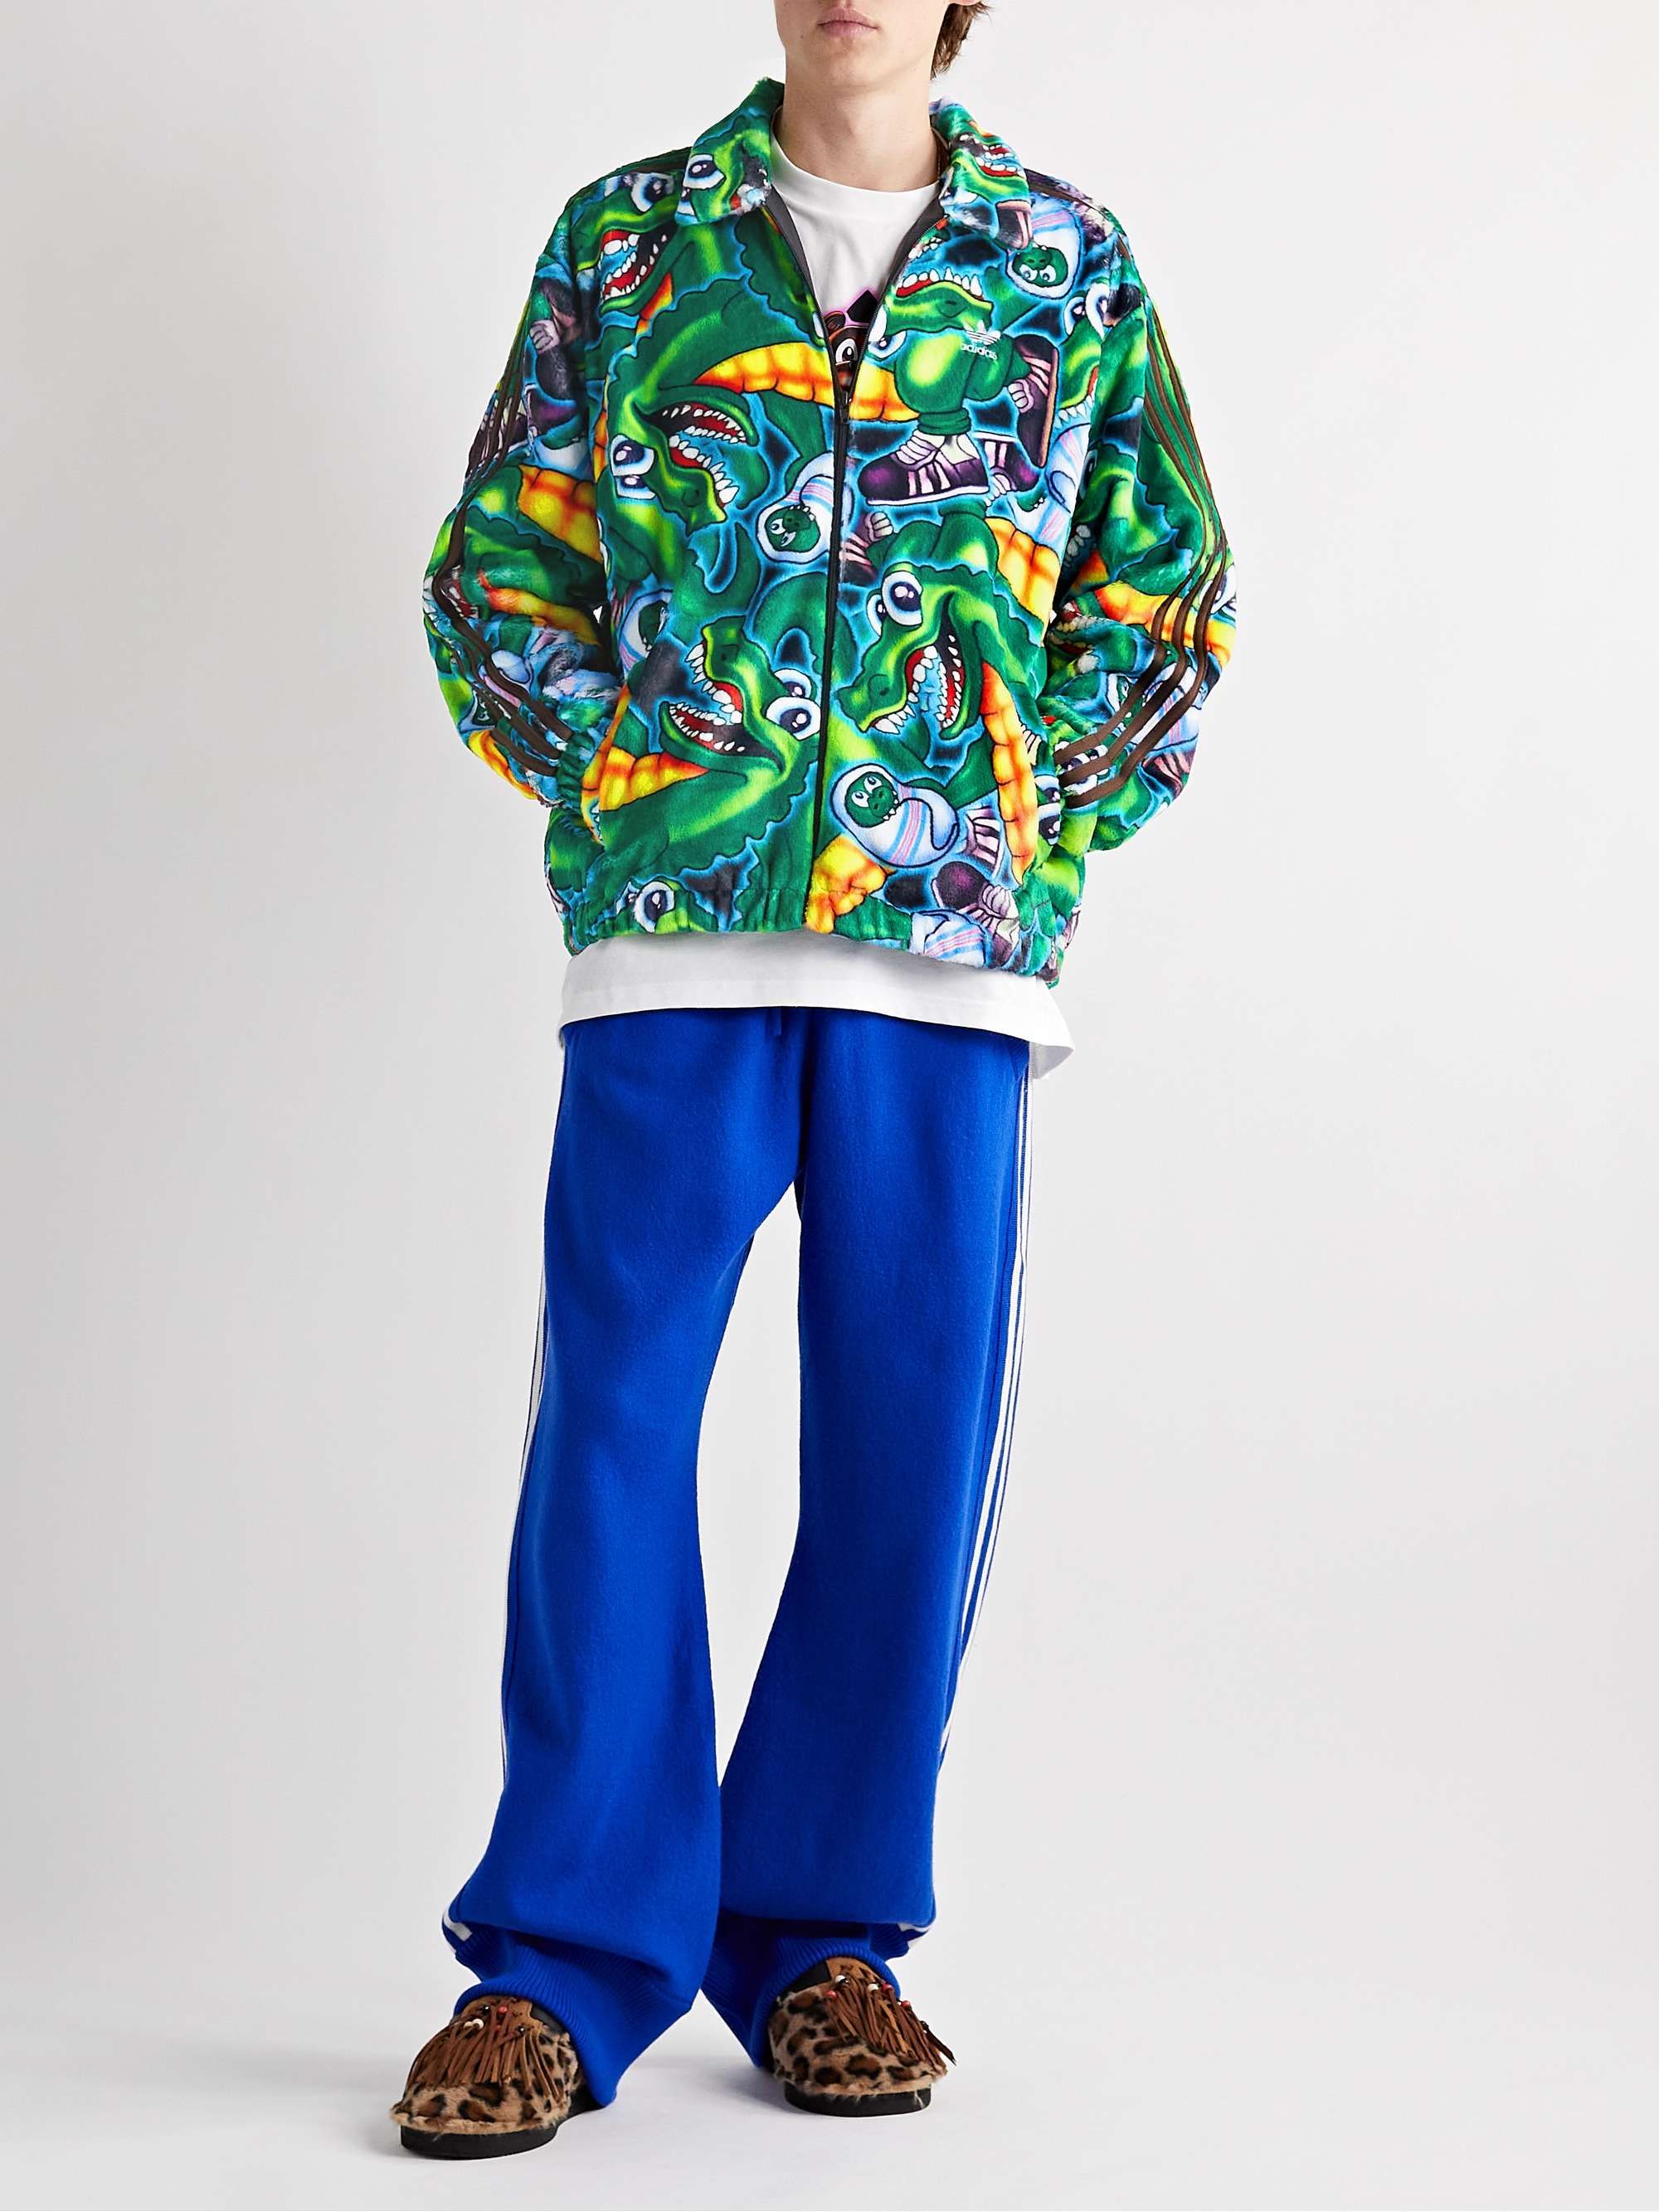 ADIDAS CONSORTIUM + Kerwin Frost Printed Fleece Jacket